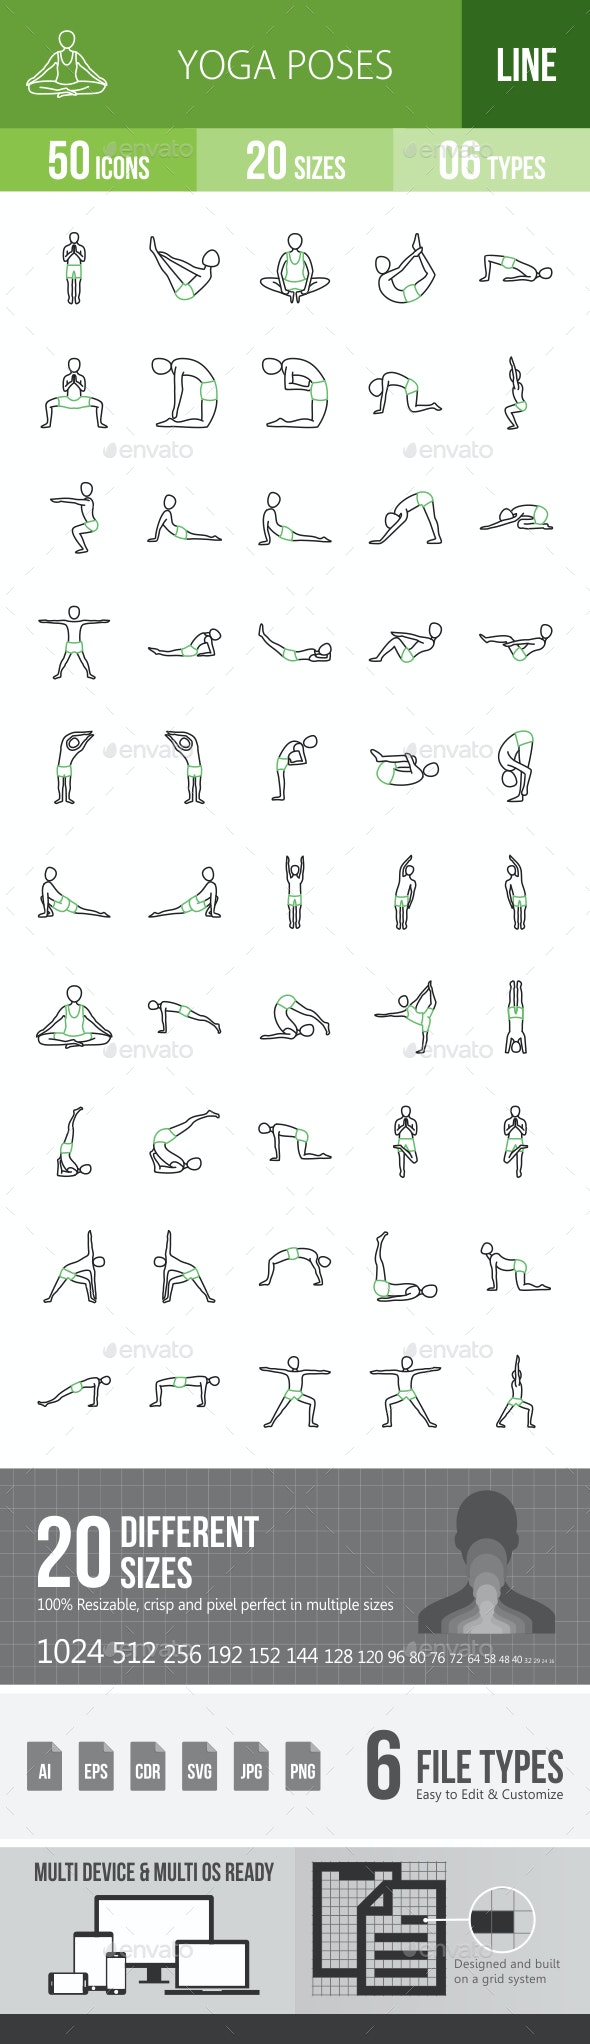 وکتور آیکون یوگا Yoga Poses Line Green & Black Icons